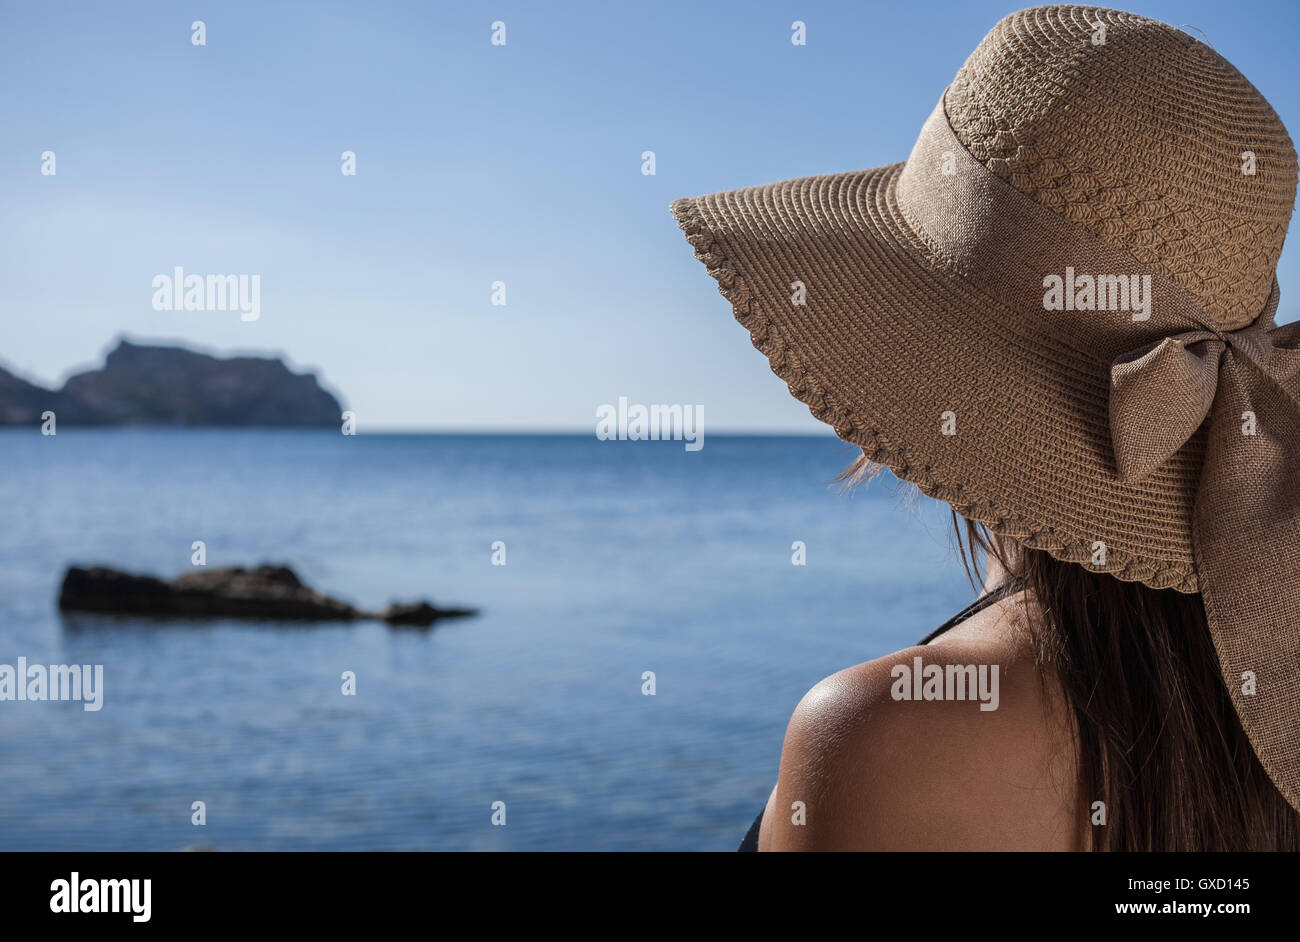 Plus d'épaule de young woman wearing sunhat looking out to sea, Villasimius, Sardaigne, Italie Banque D'Images